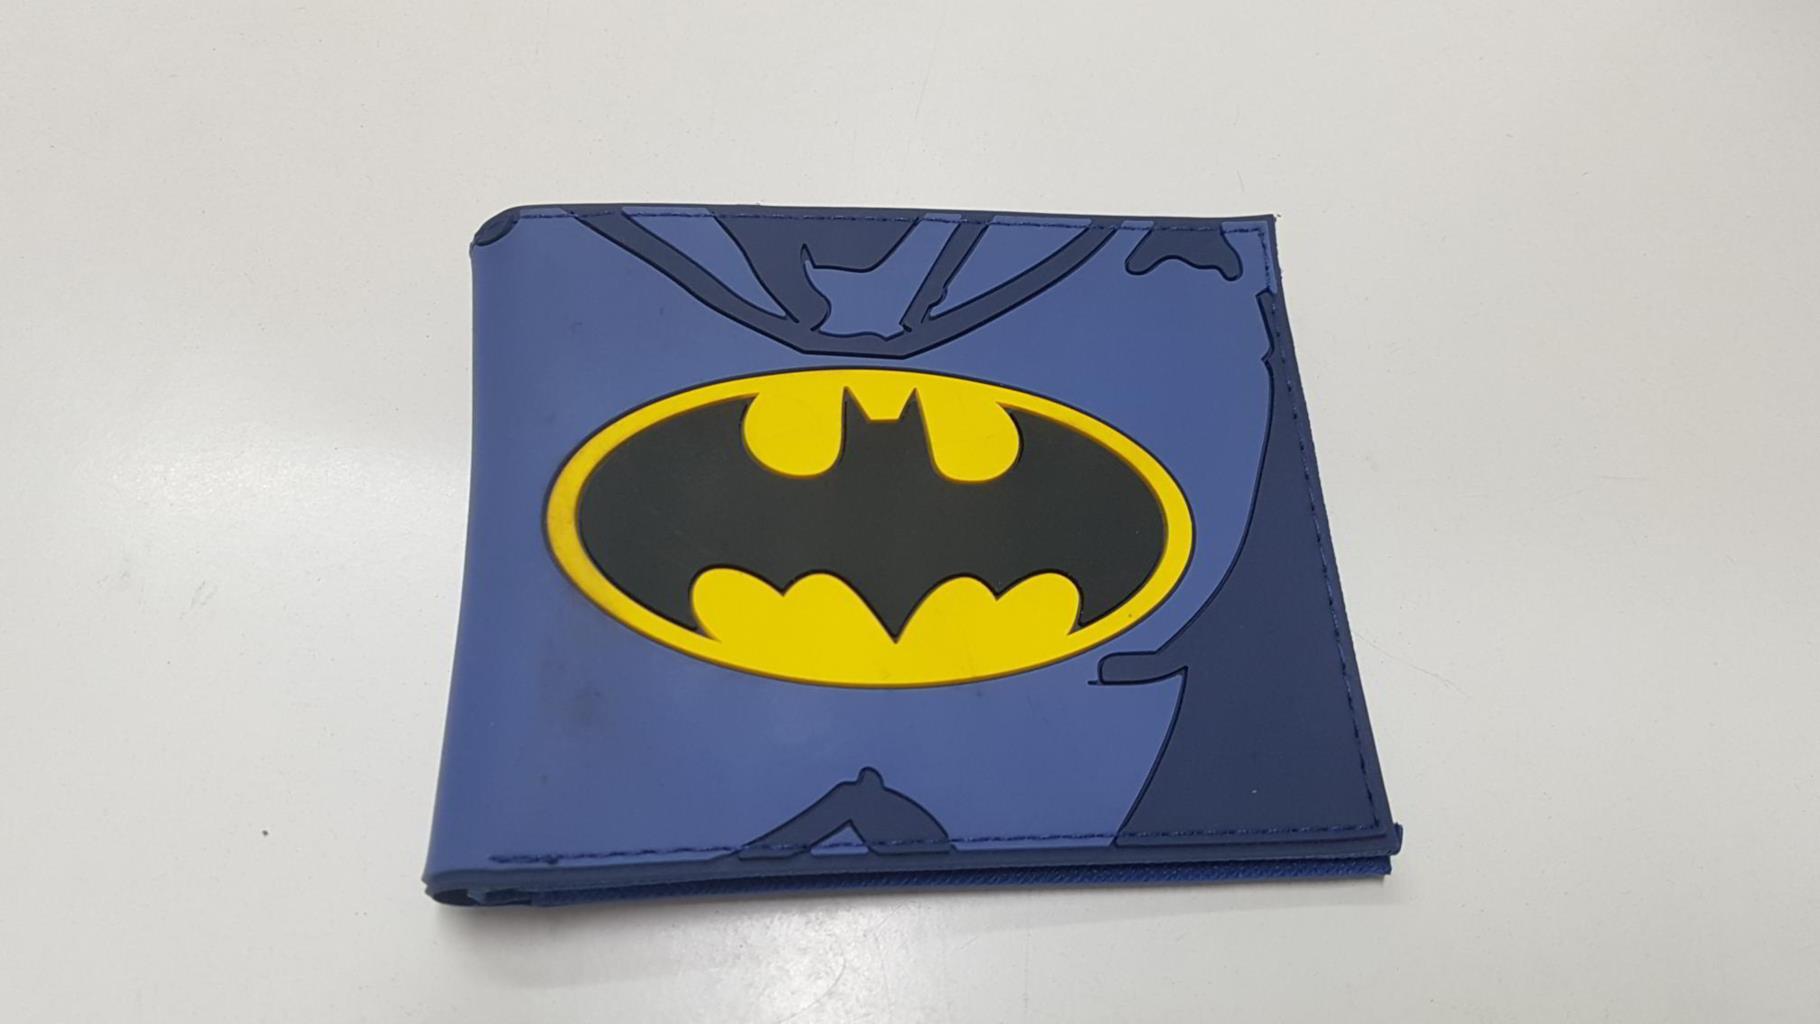 Cartera de bolsillo: Logotipo de Batman con fondo azul  |  Libros y Coleccionismo